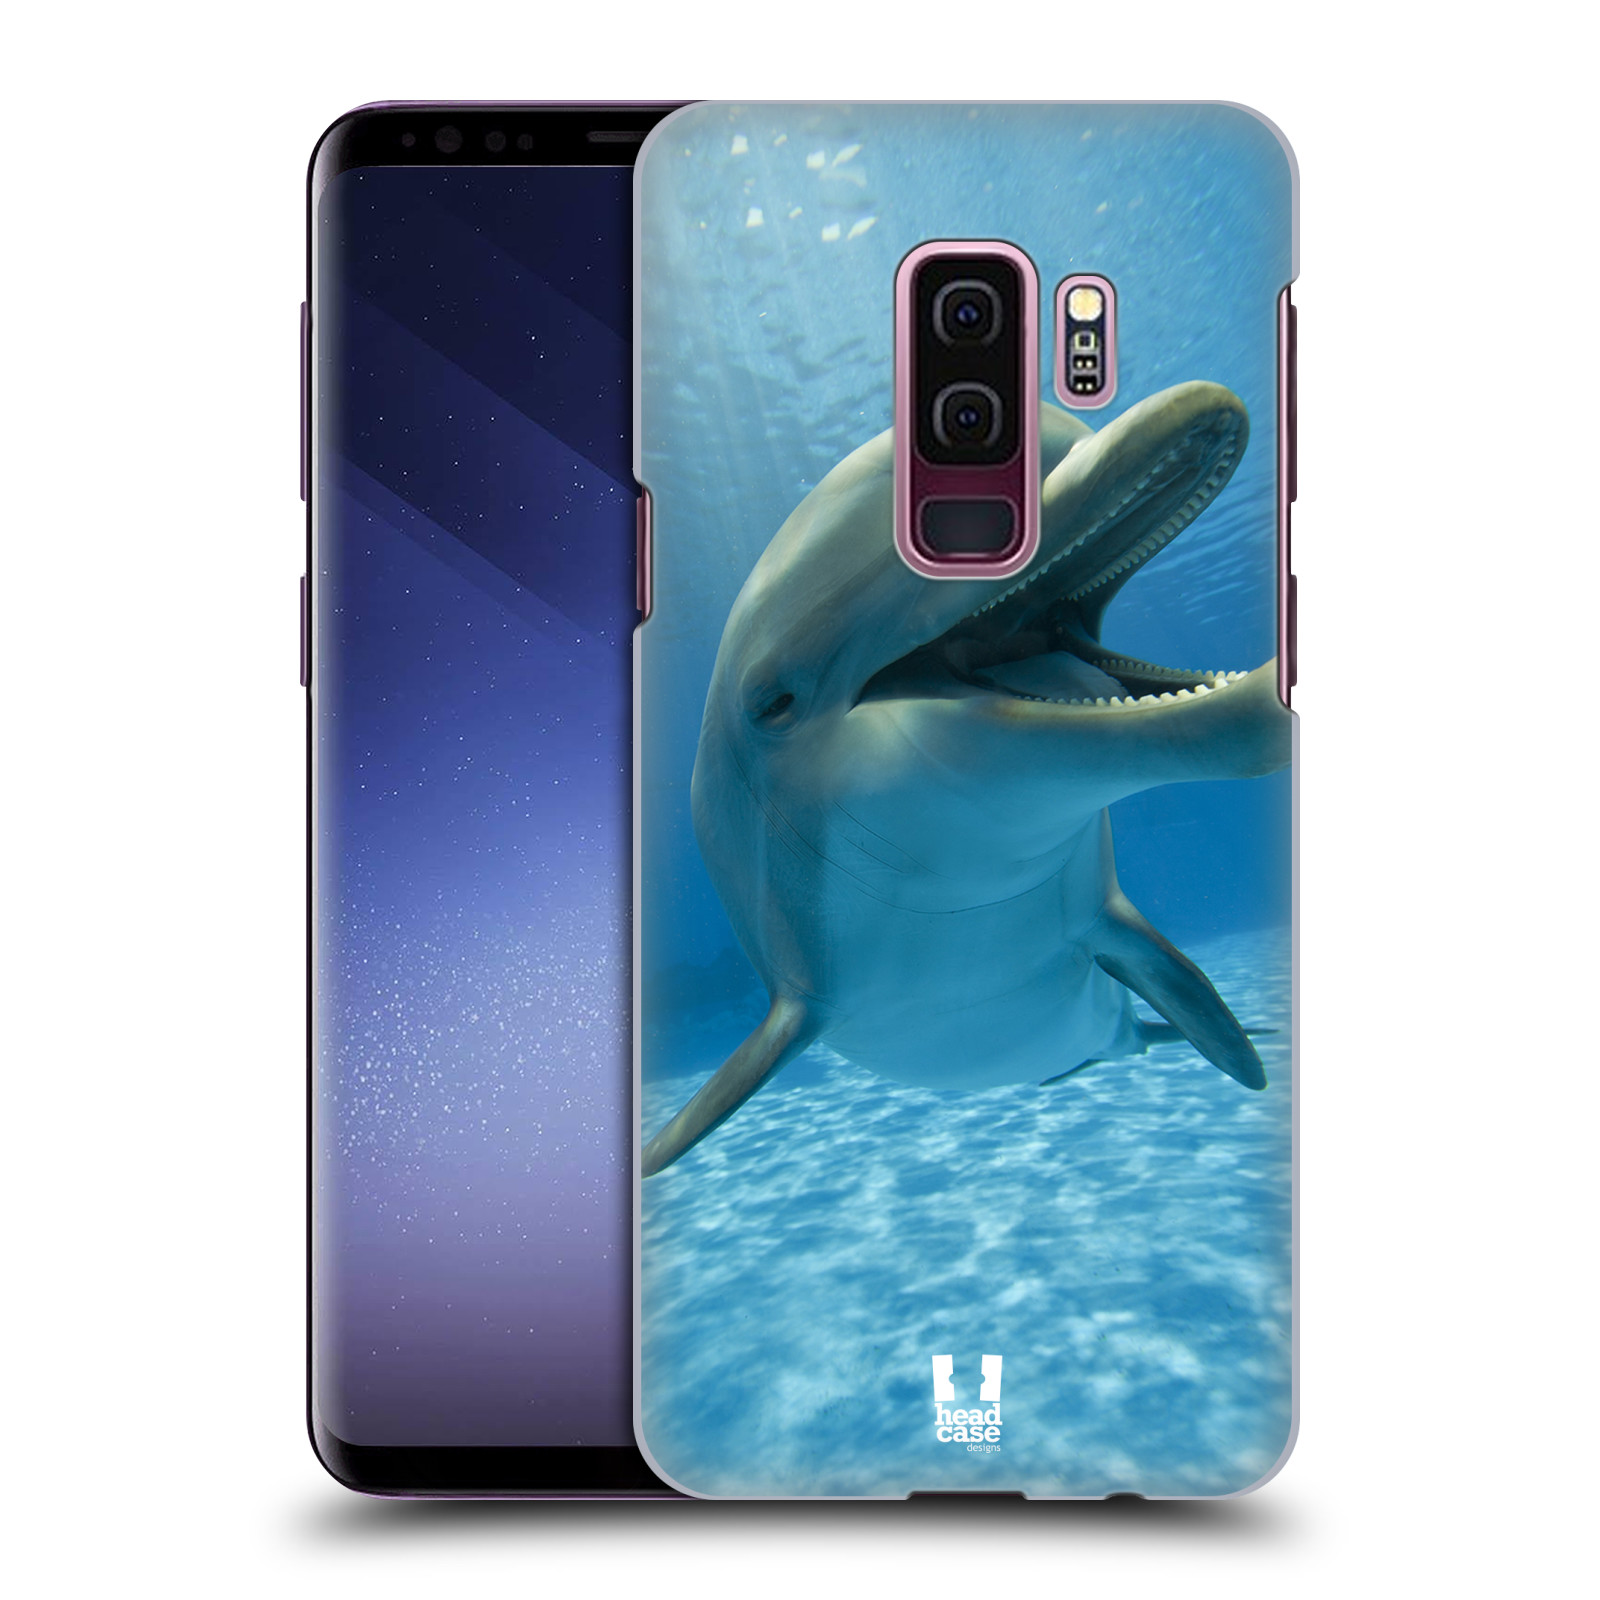 Zadní obal pro mobil Samsung Galaxy S9 PLUS - HEAD CASE - Svět zvířat delfín v moři